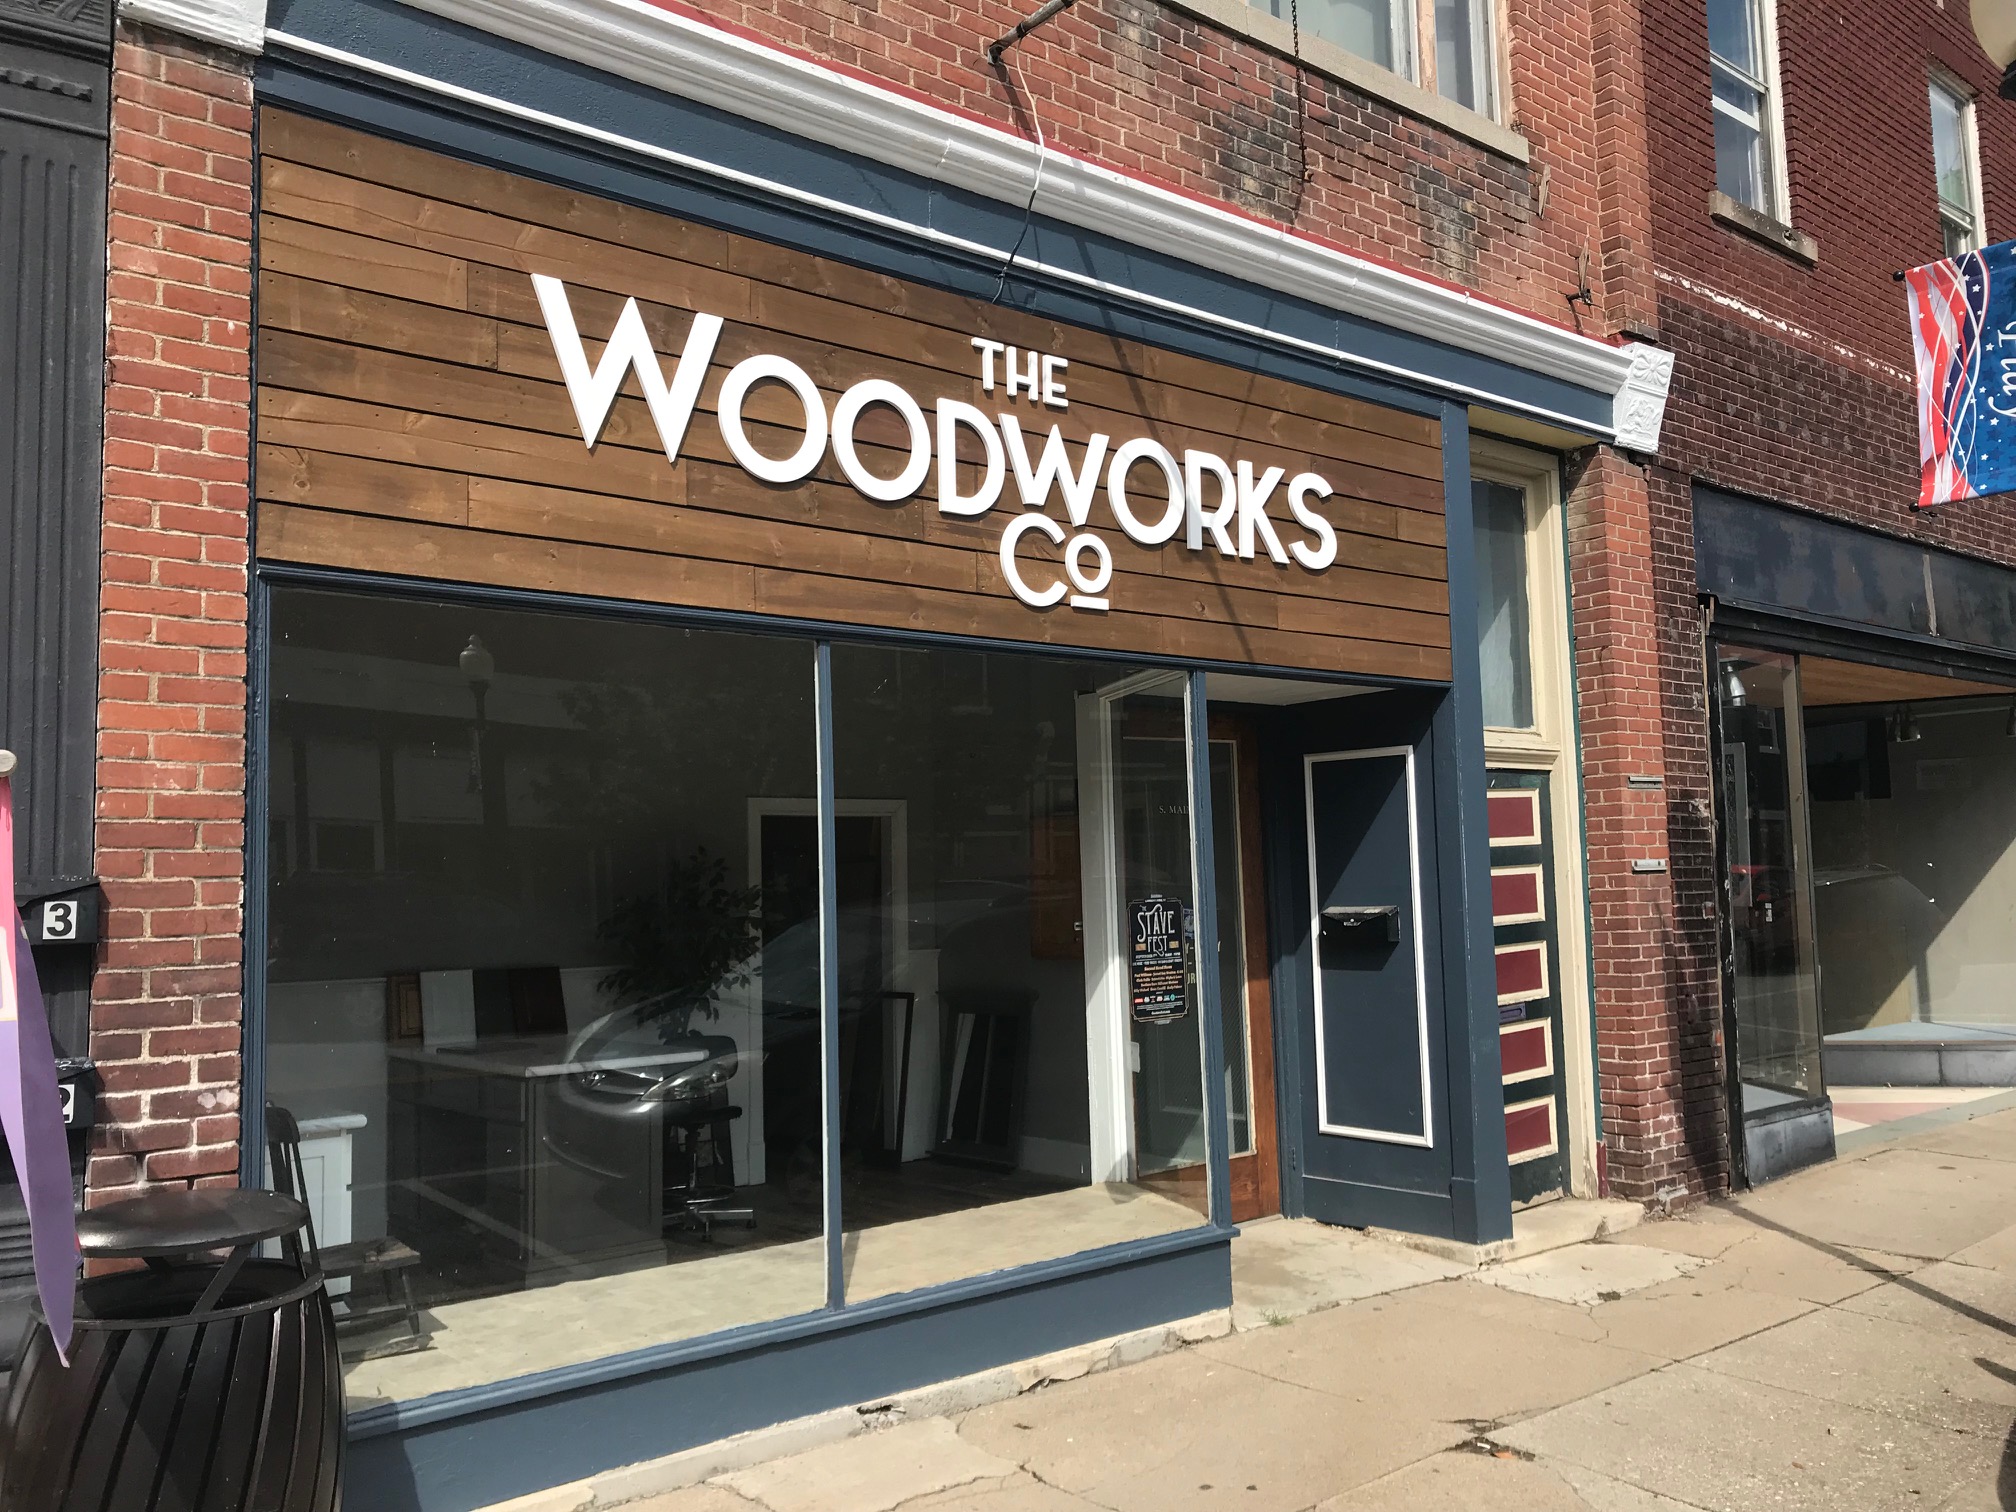 Woodworks Co. – Visit Lawrenceburg KY